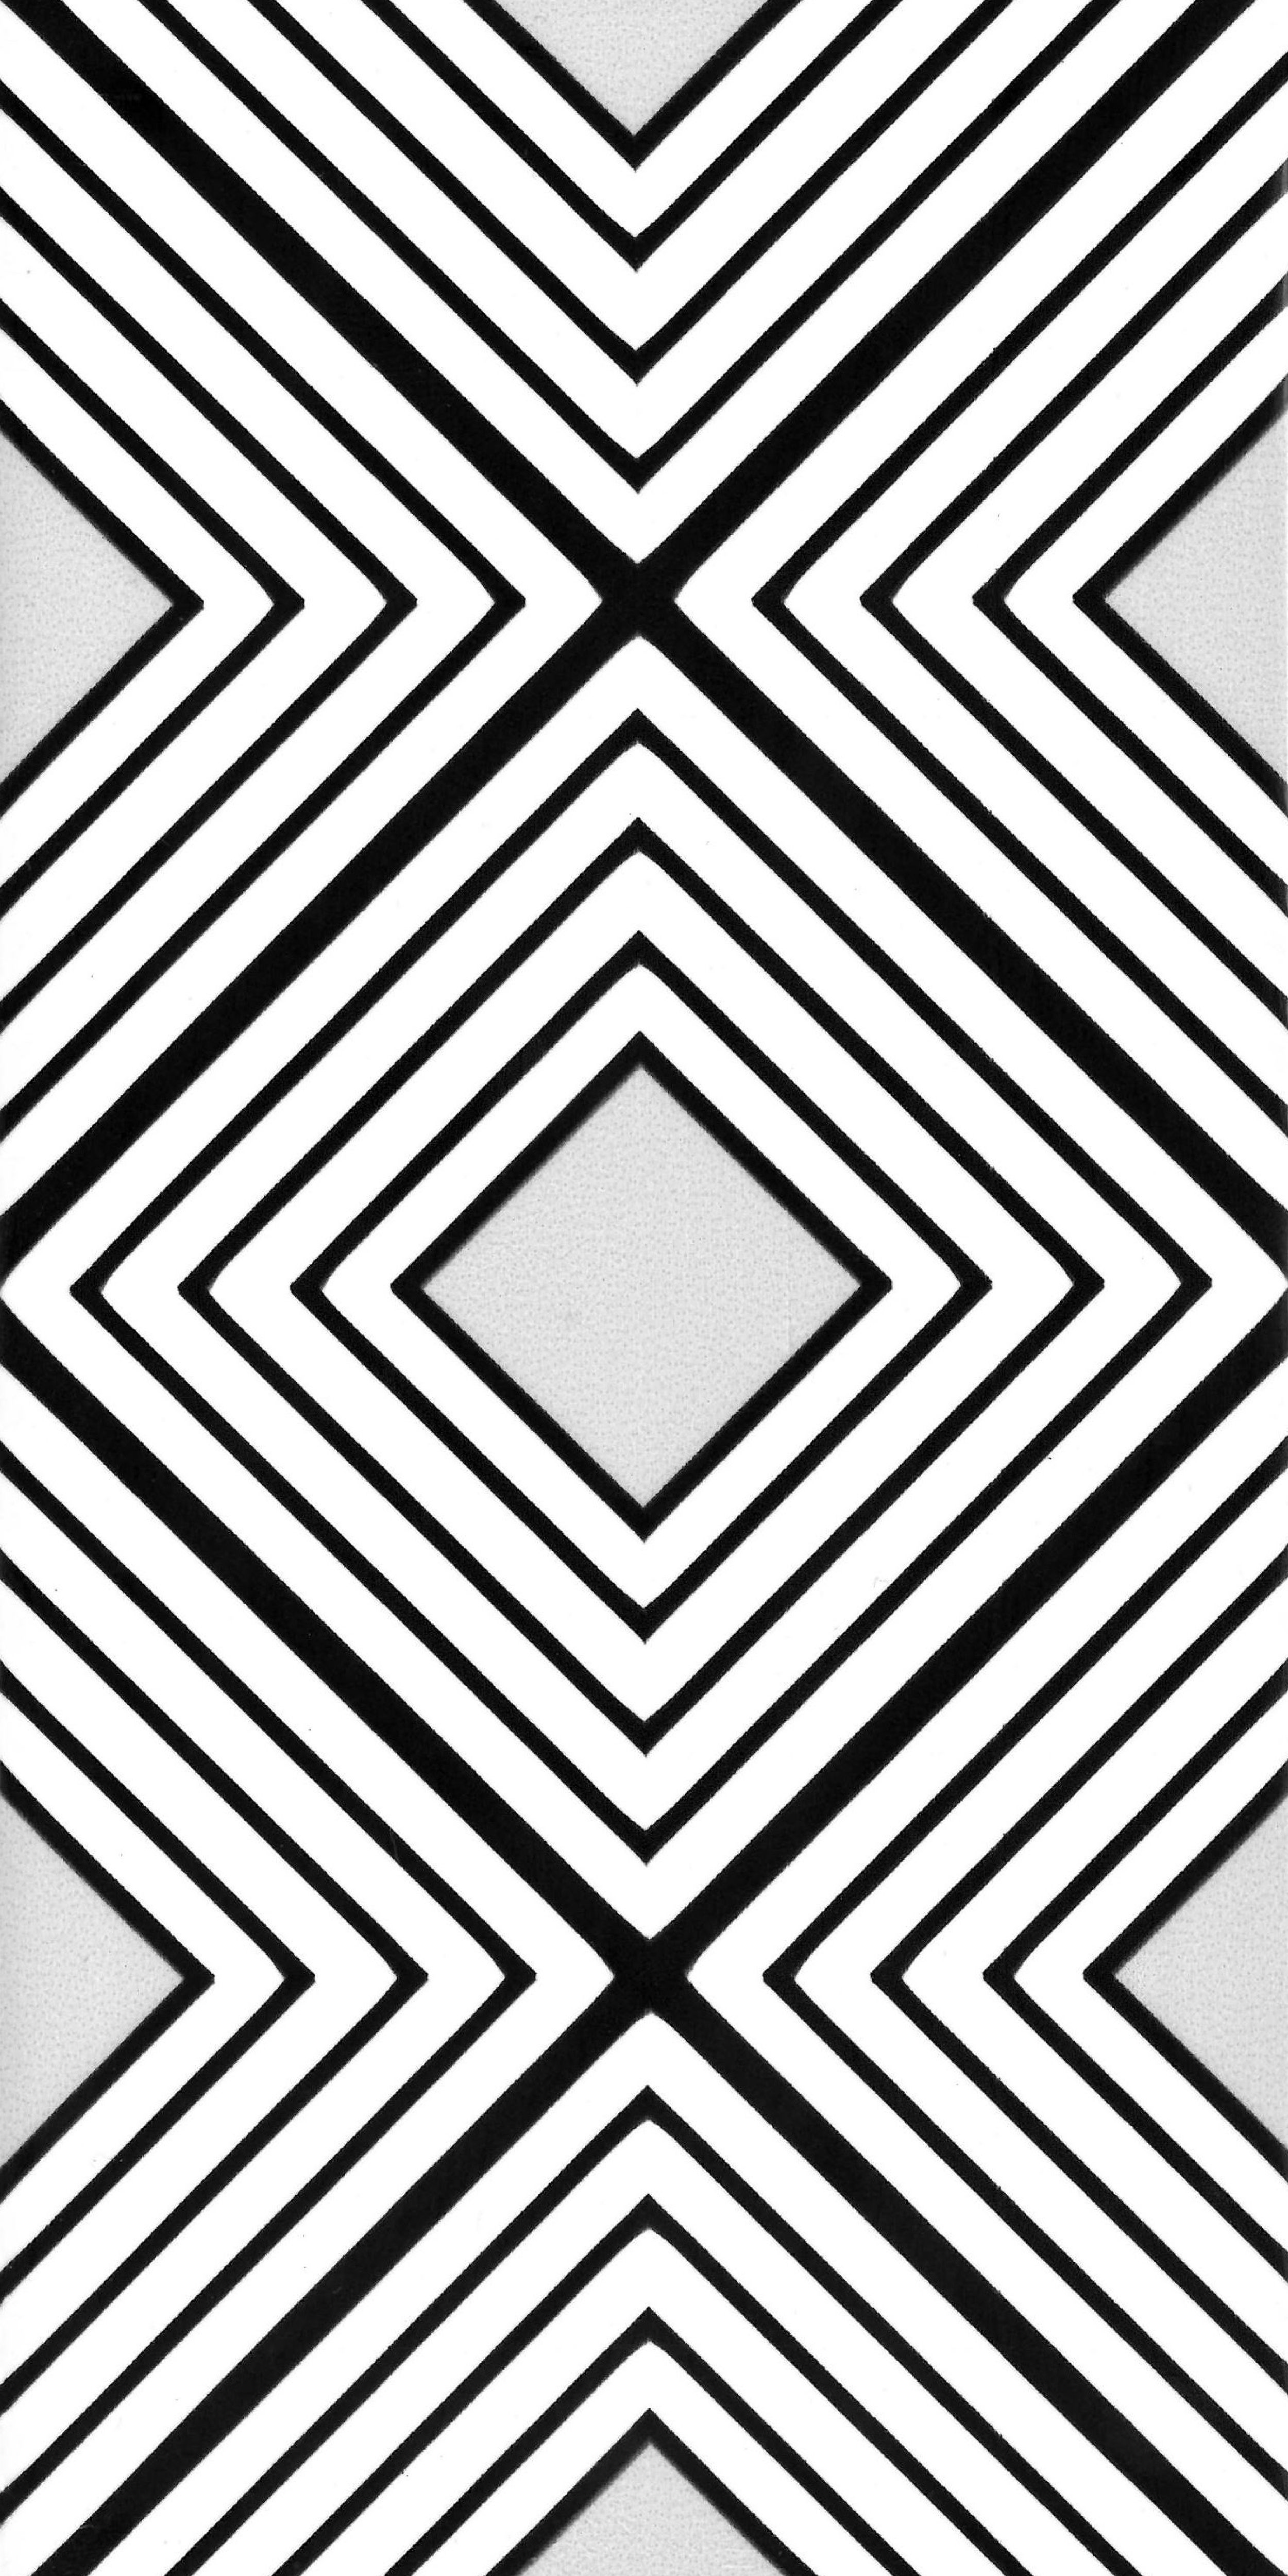 Johnson Tiles Monochrome Black & white Gloss Patterned Ceramic Wall Tile Sample